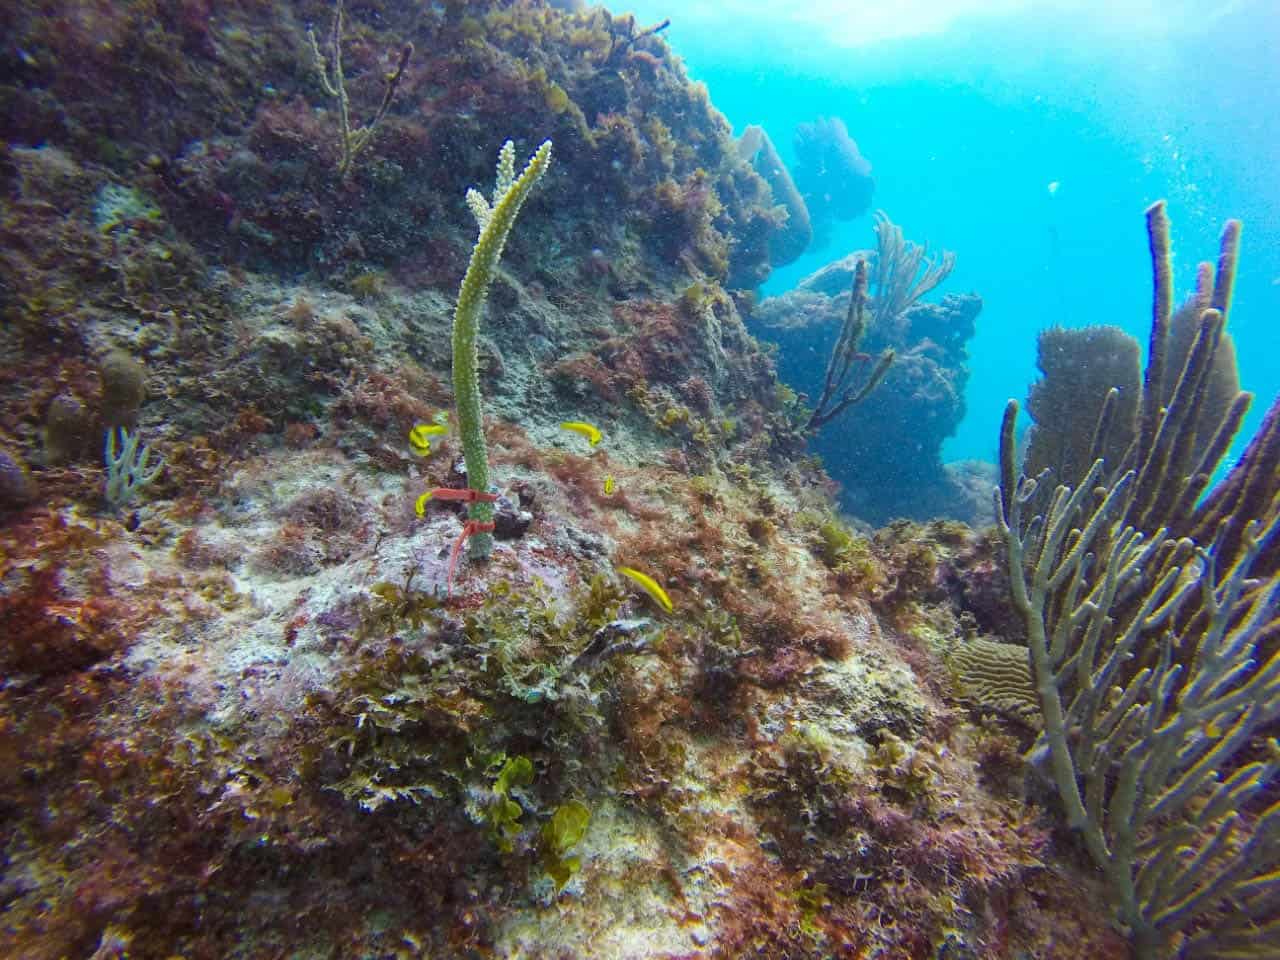 grave enfermedad amenaza 50 especies de corales del caribe